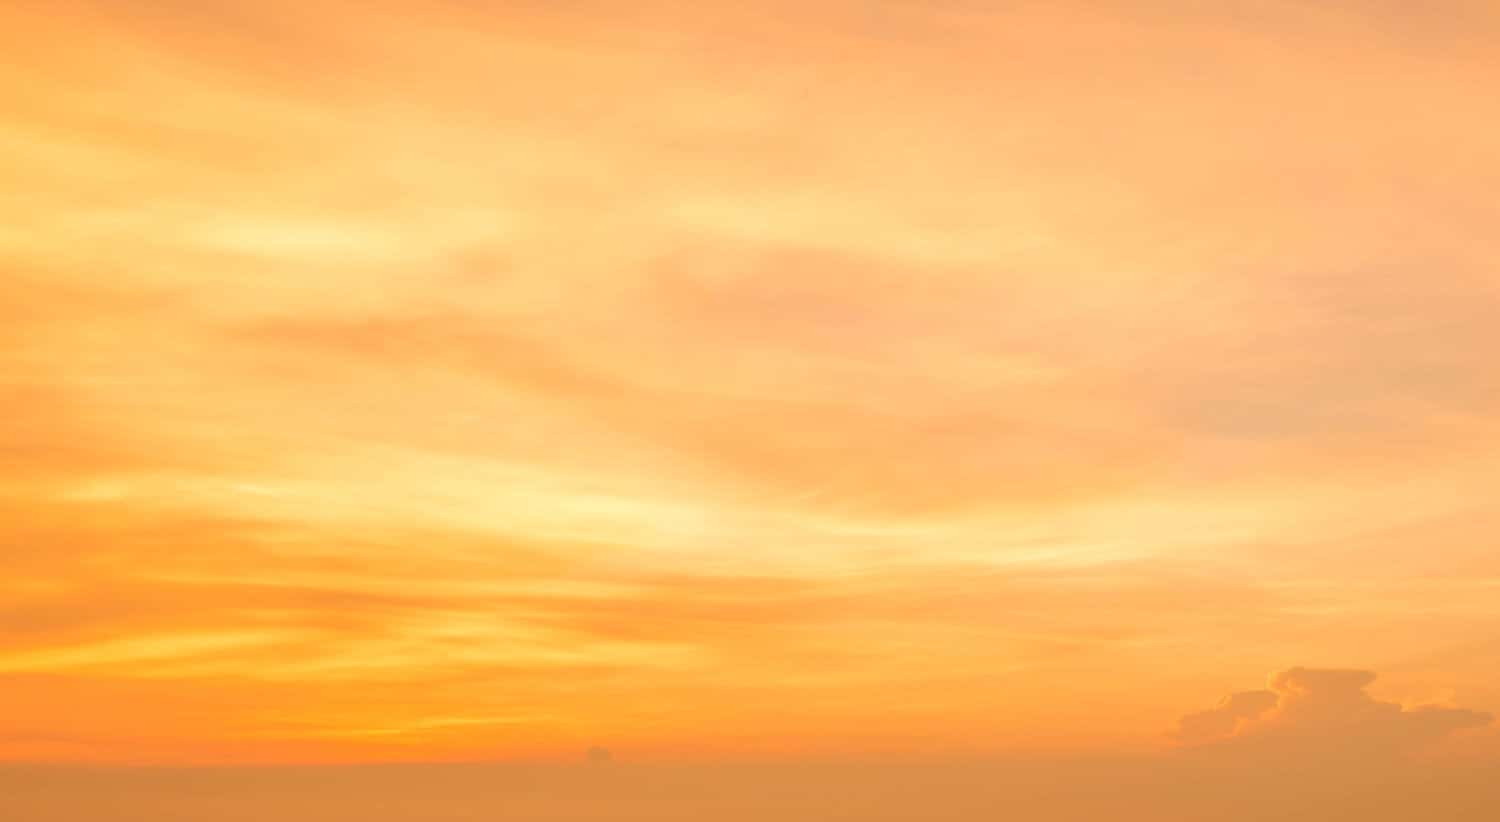 Fiery orange sunset sky. Beautiful sky